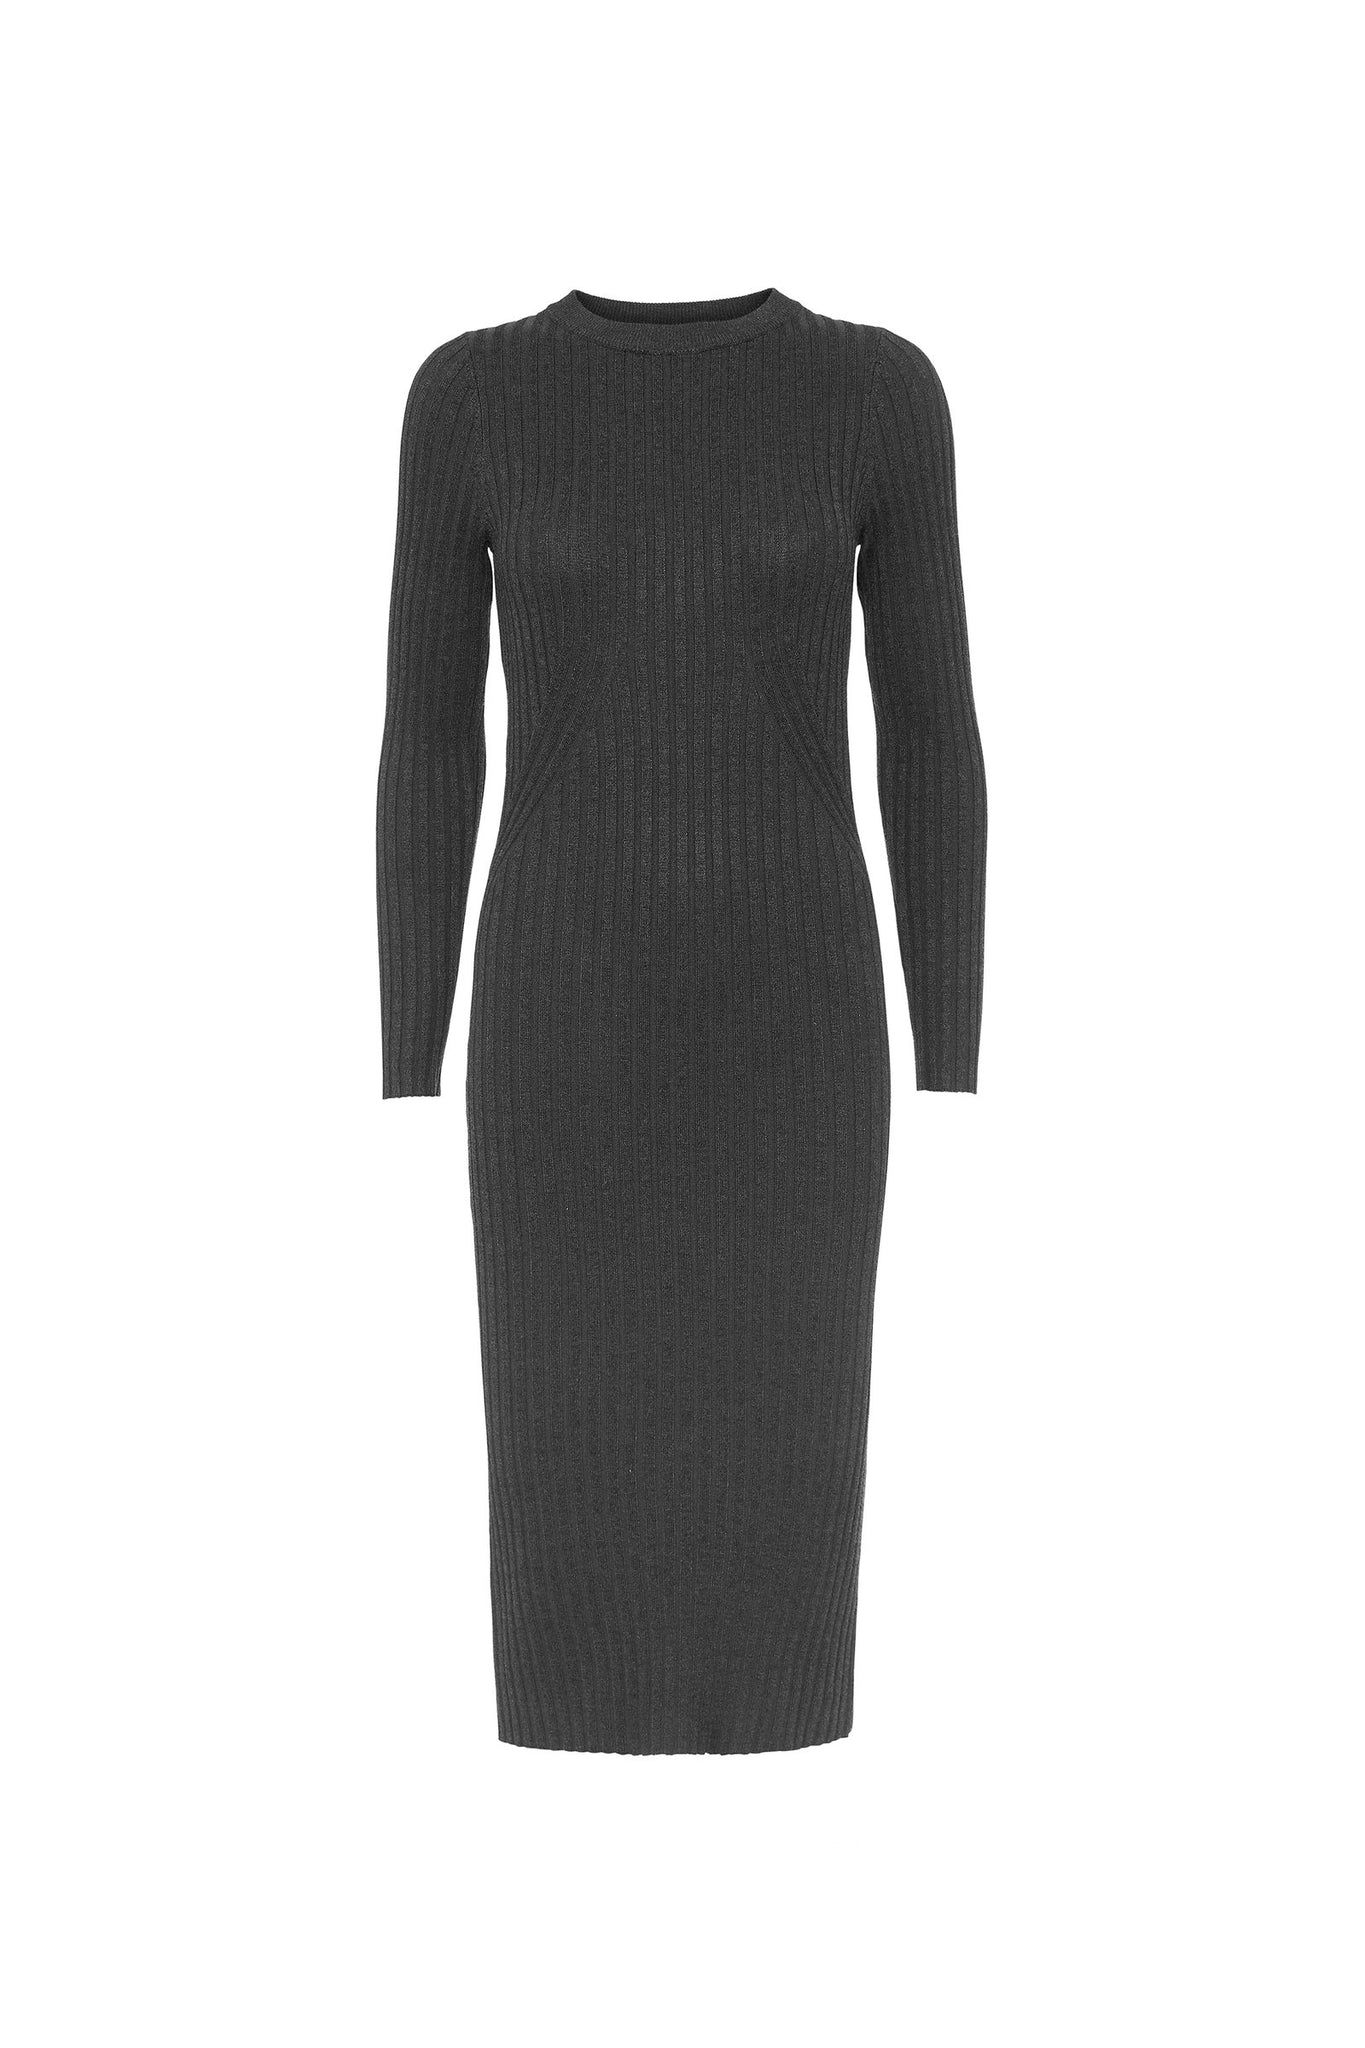 Karlina o-neck long sleeved dress in dark grey melange